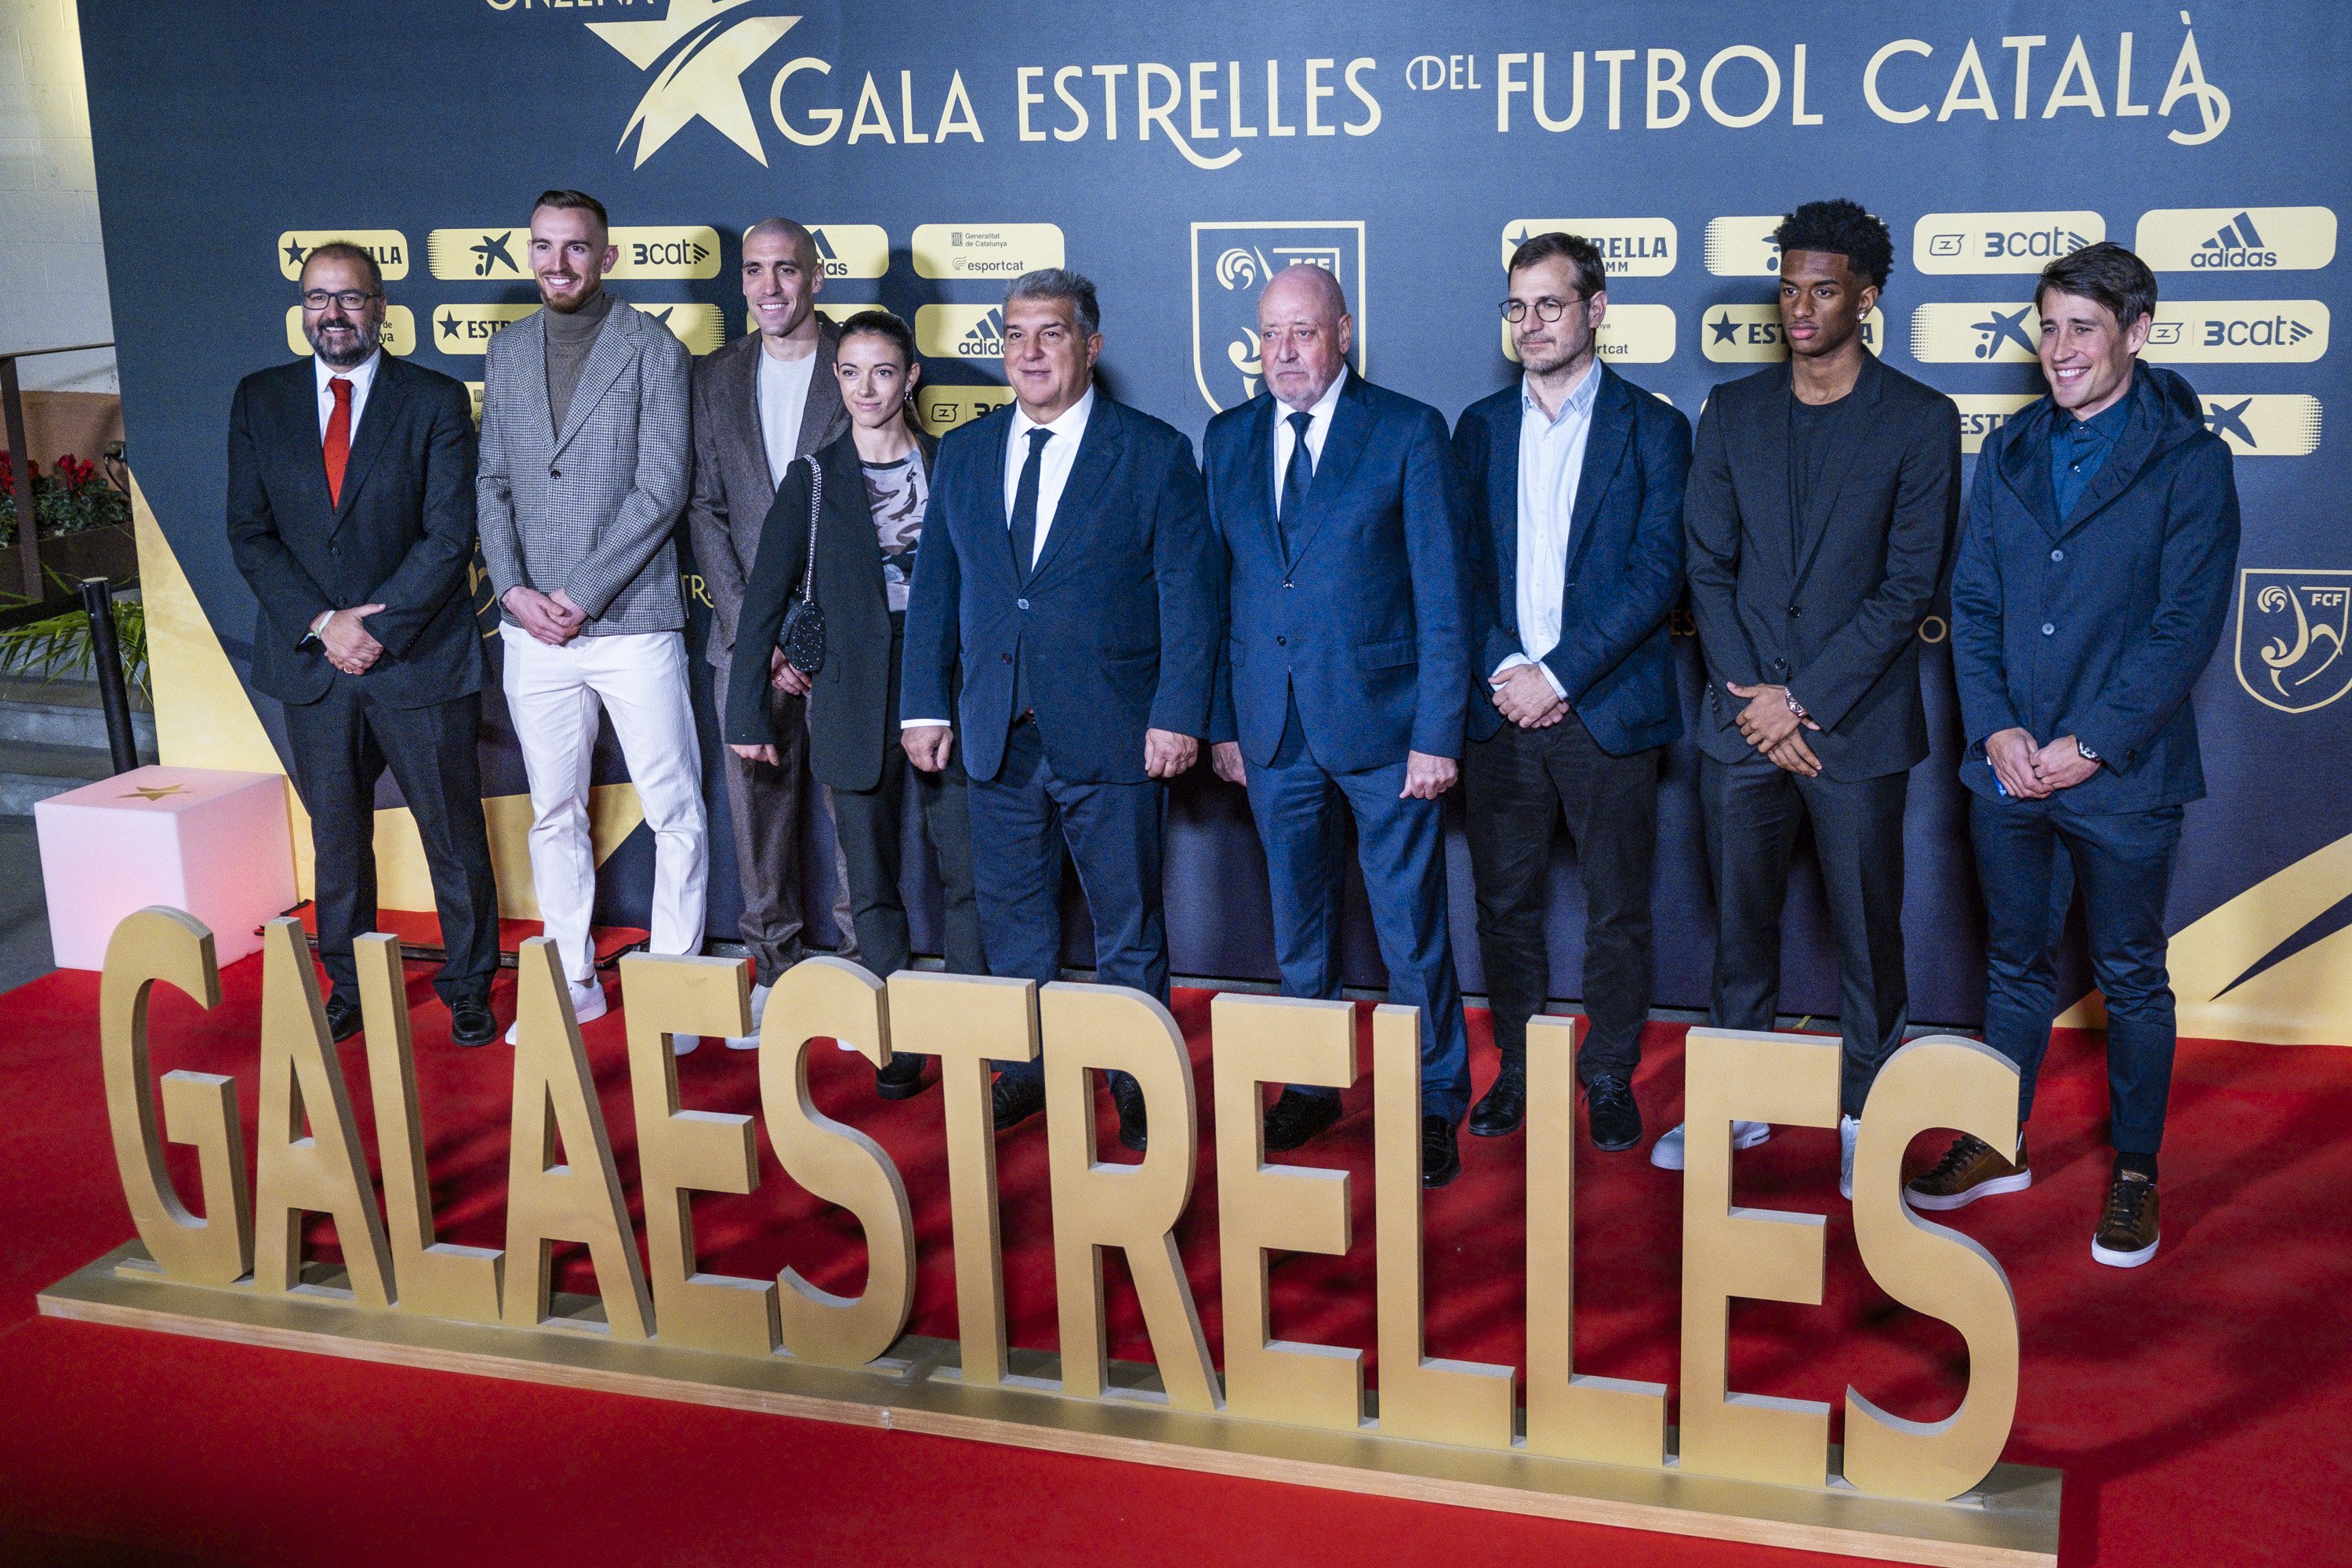 Les estrelles del futbol català s'alineen: Aitana Bonmatí i Oriol Romeu, protagonistes absoluts